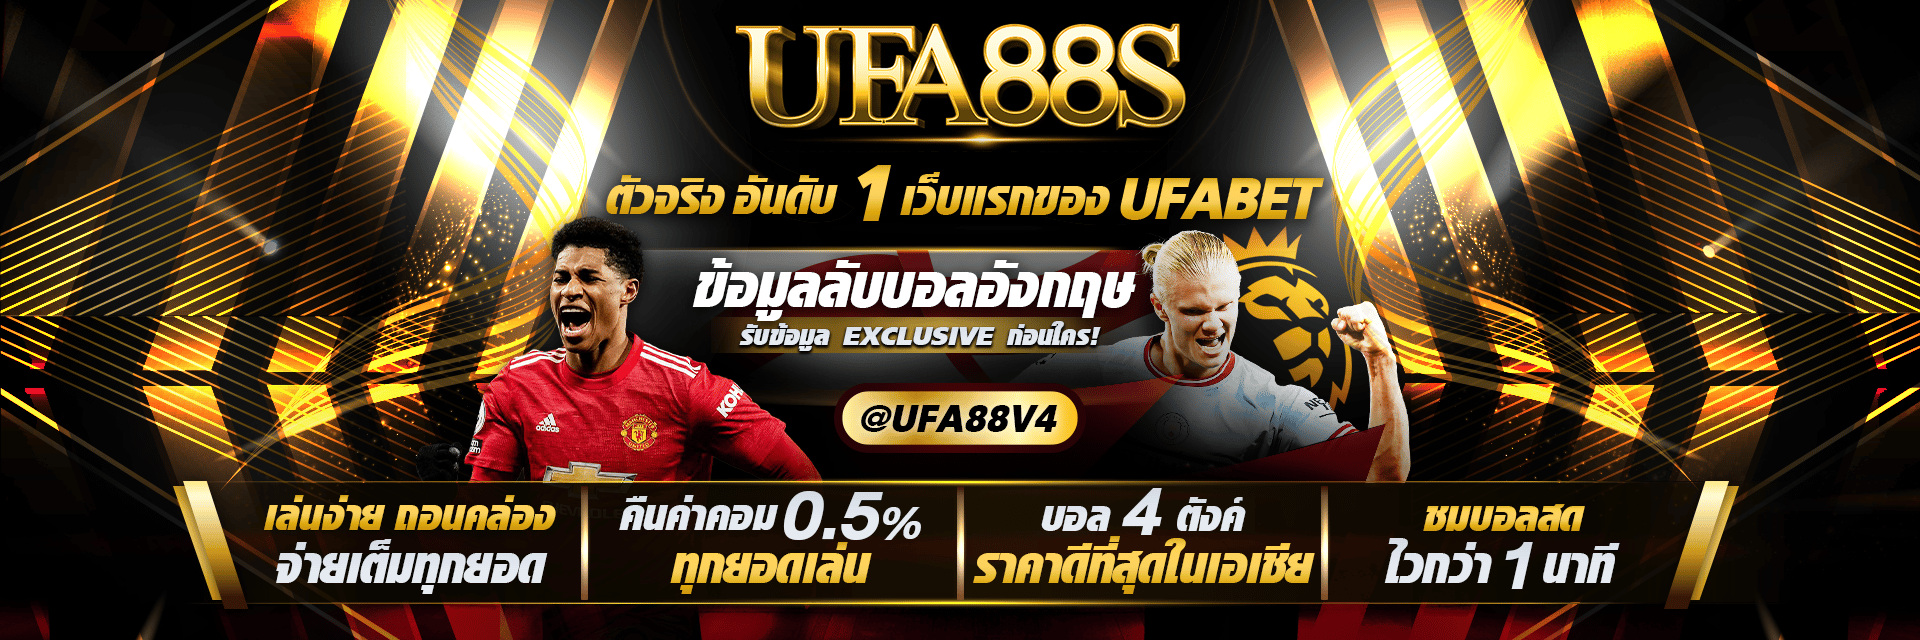 UFABET อันดับ 1 ของคนไทย